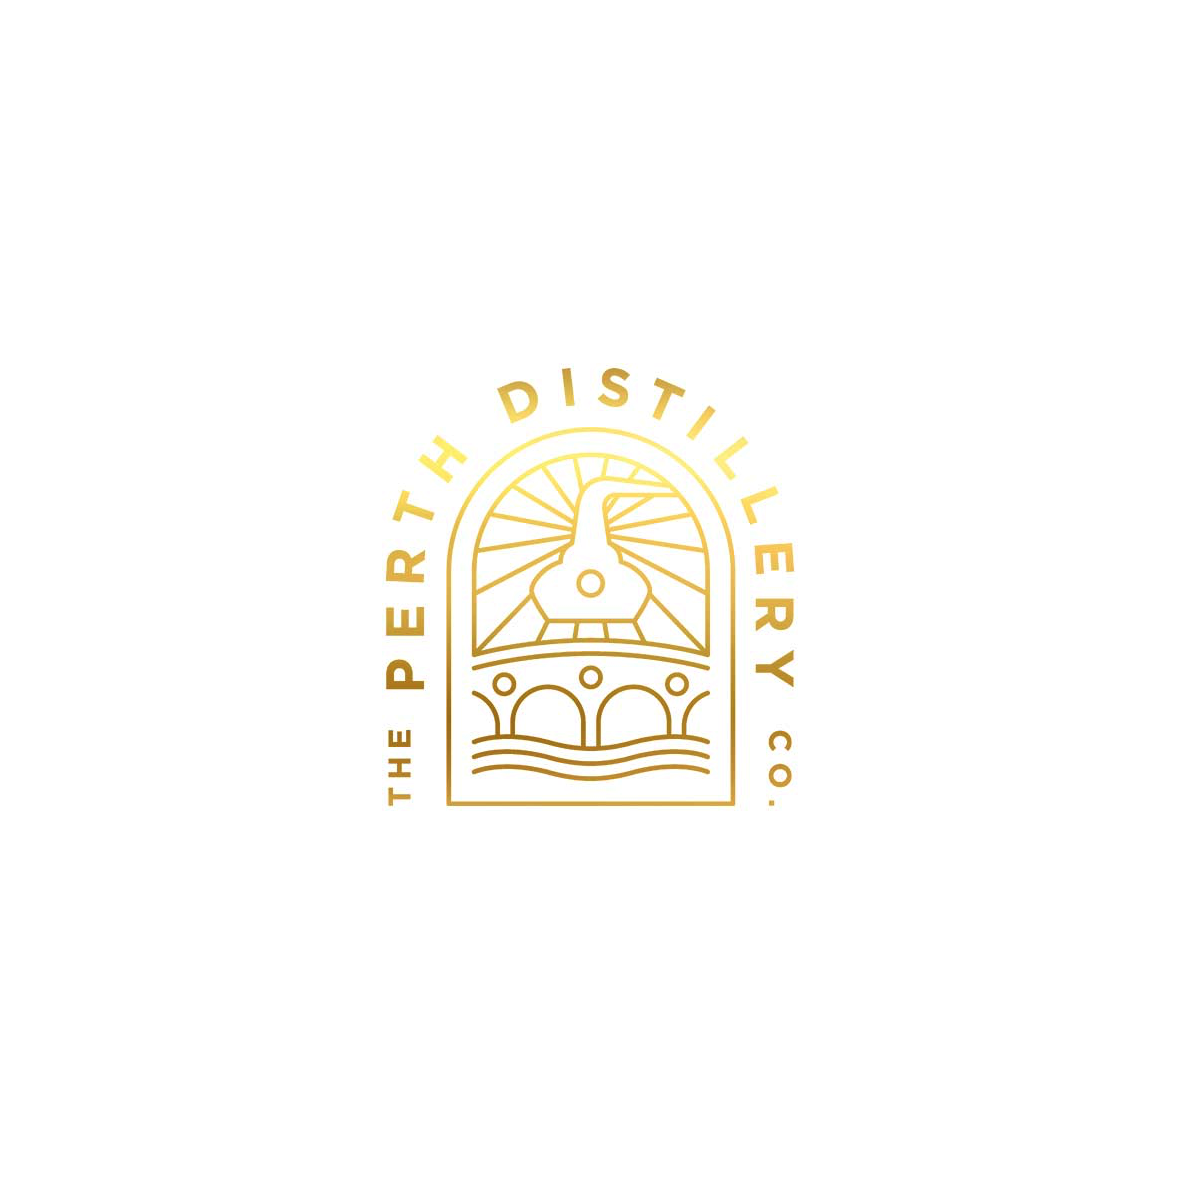 The Perth Distillery Co. brand logo